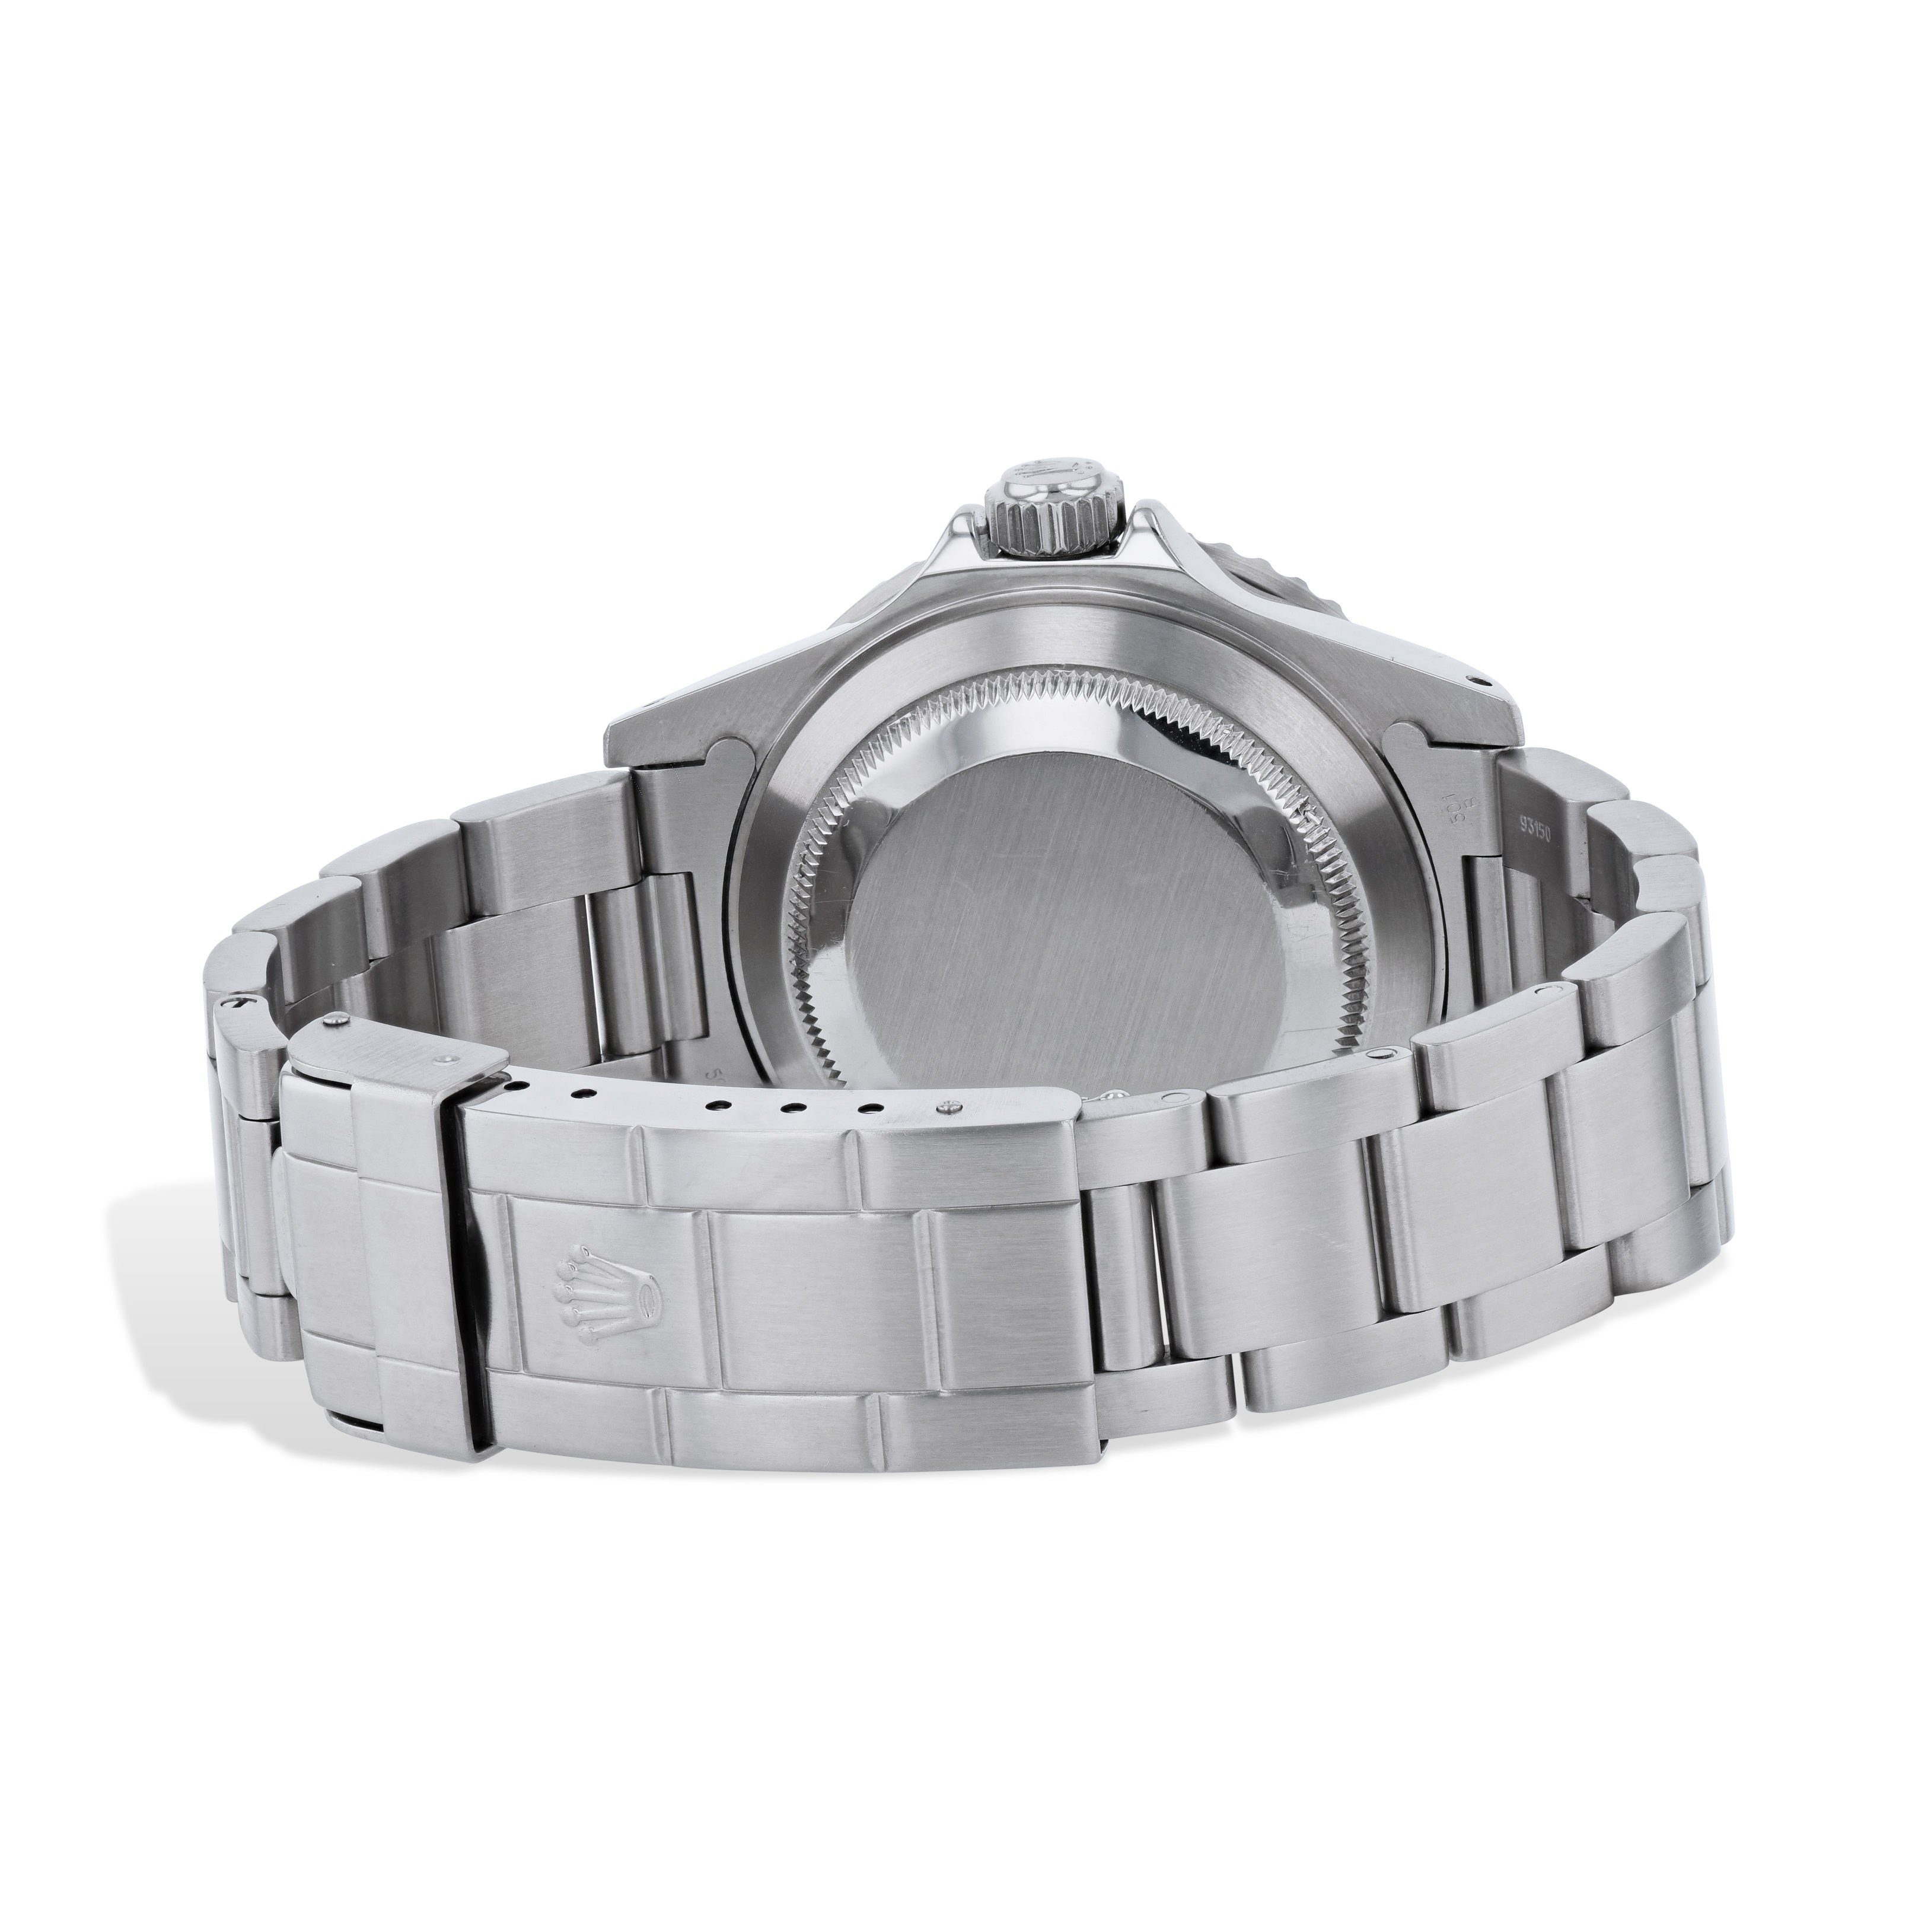 Rolex Submariner Stainless Steel 40mm Estate Watch -16610 Watches Estate & Vintage